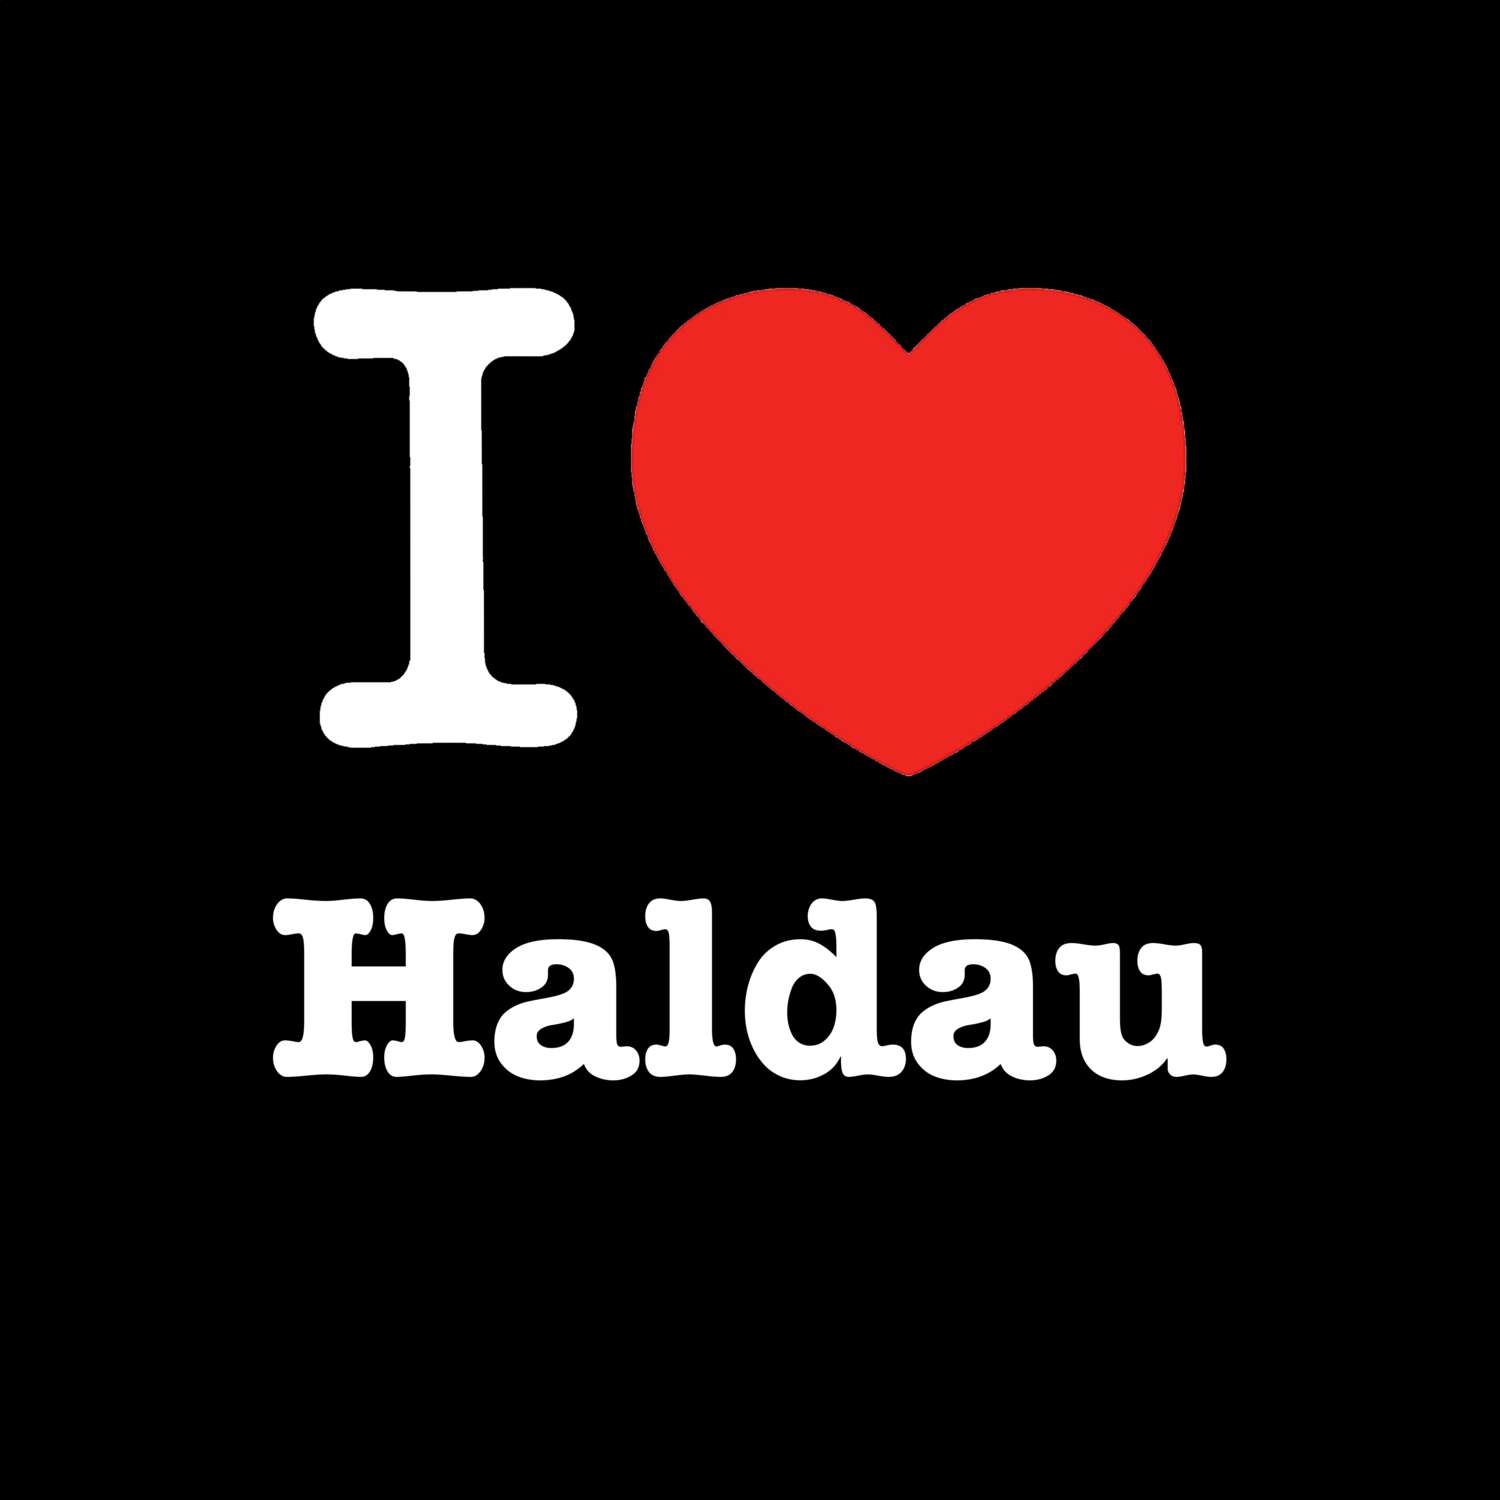 Haldau T-Shirt »I love«